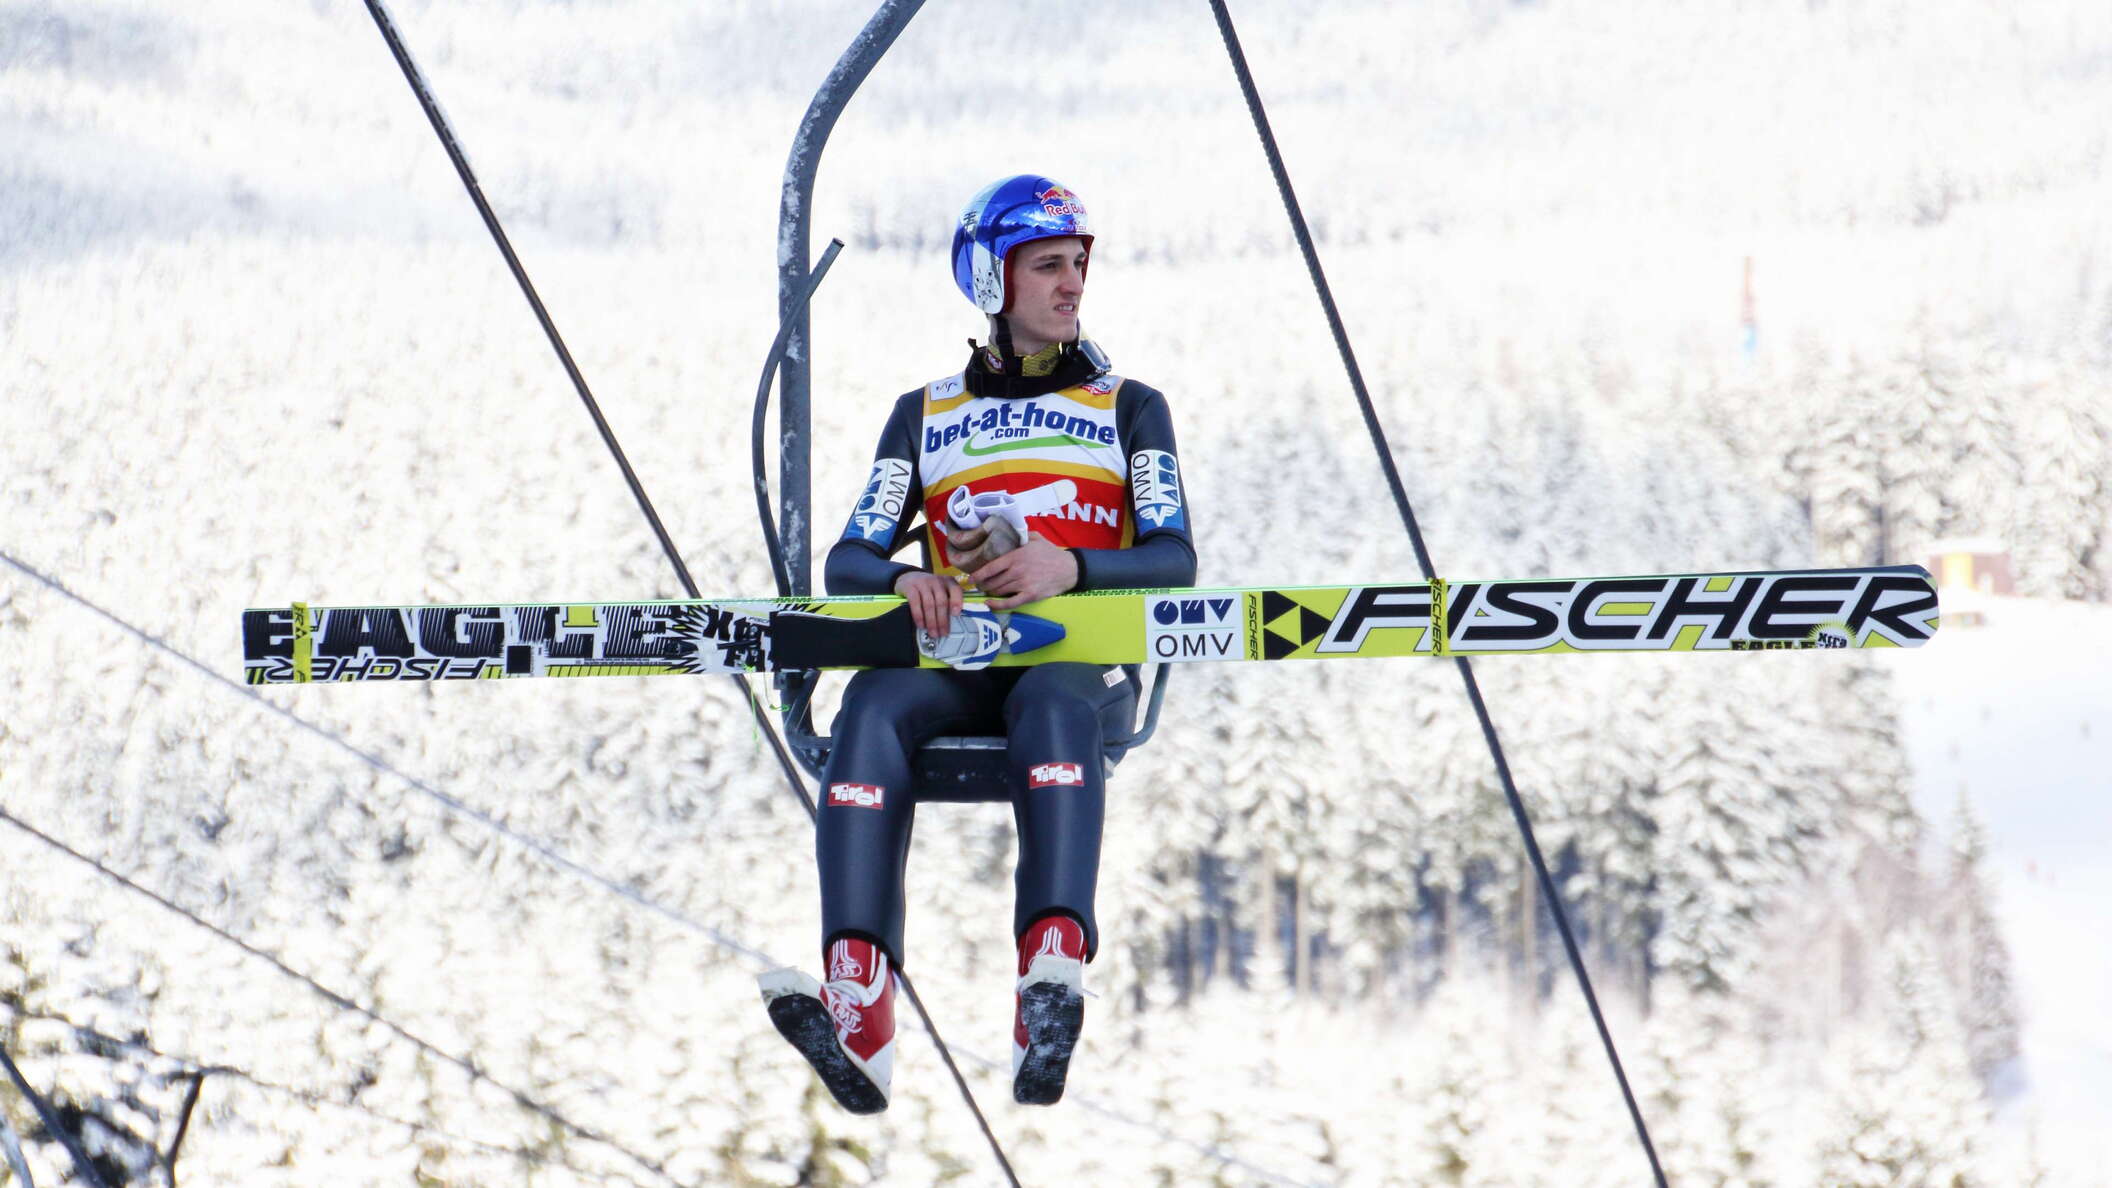 Harrachov | Ski flying competitor